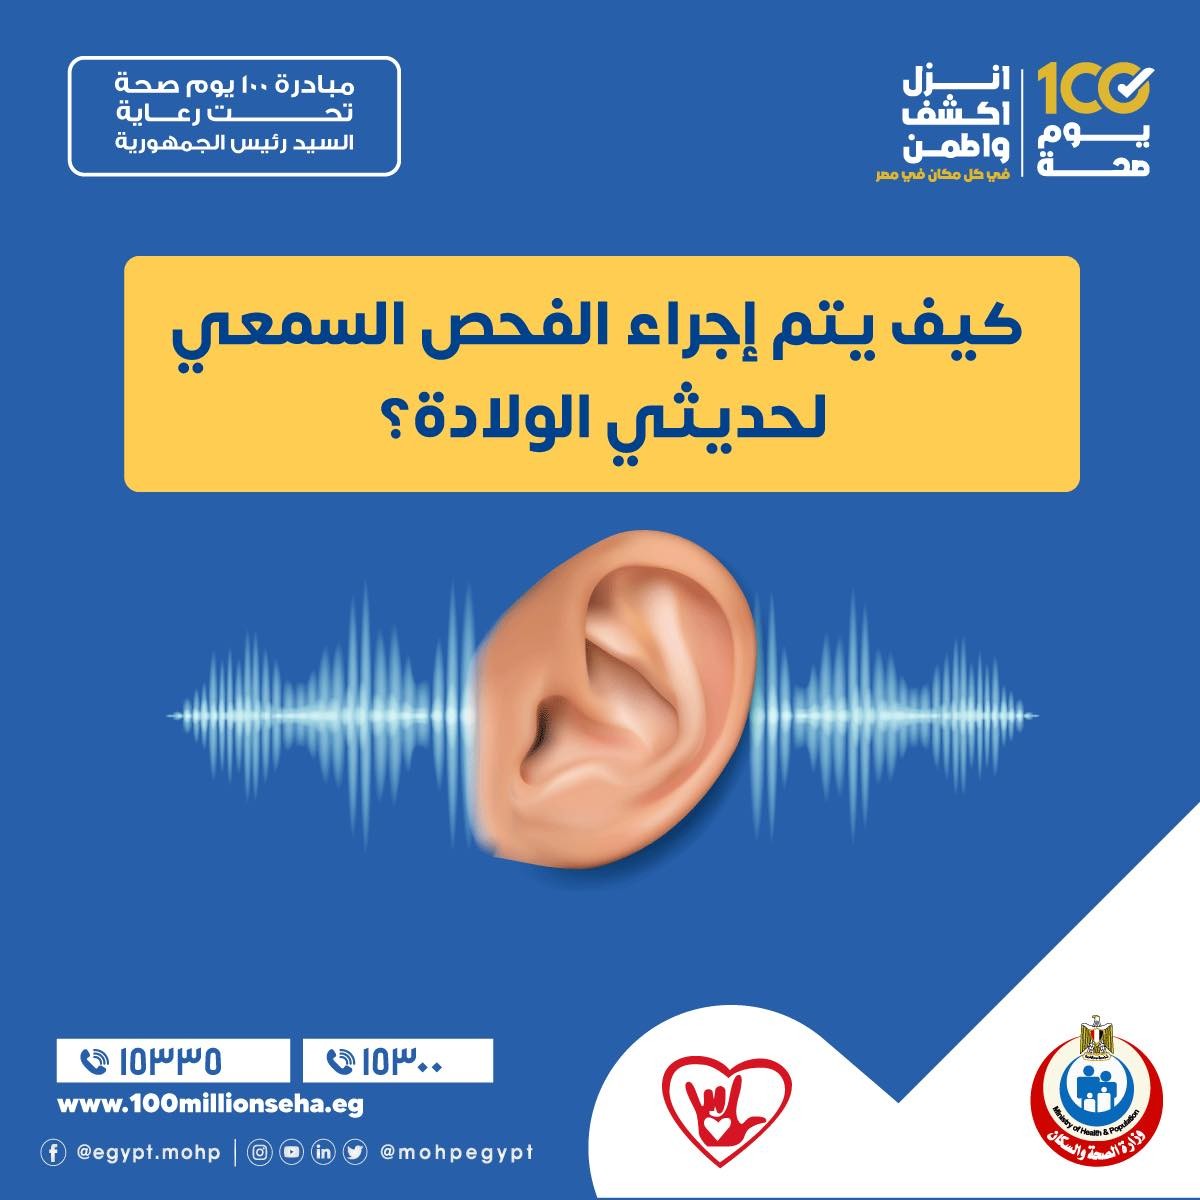 كيف يتم إجراء الفحص السمعي لحديثي الولادة ضمن مبادرة رئيس الجمهورية لاكتشاف وعلاج فقدان وضعف السمع؟